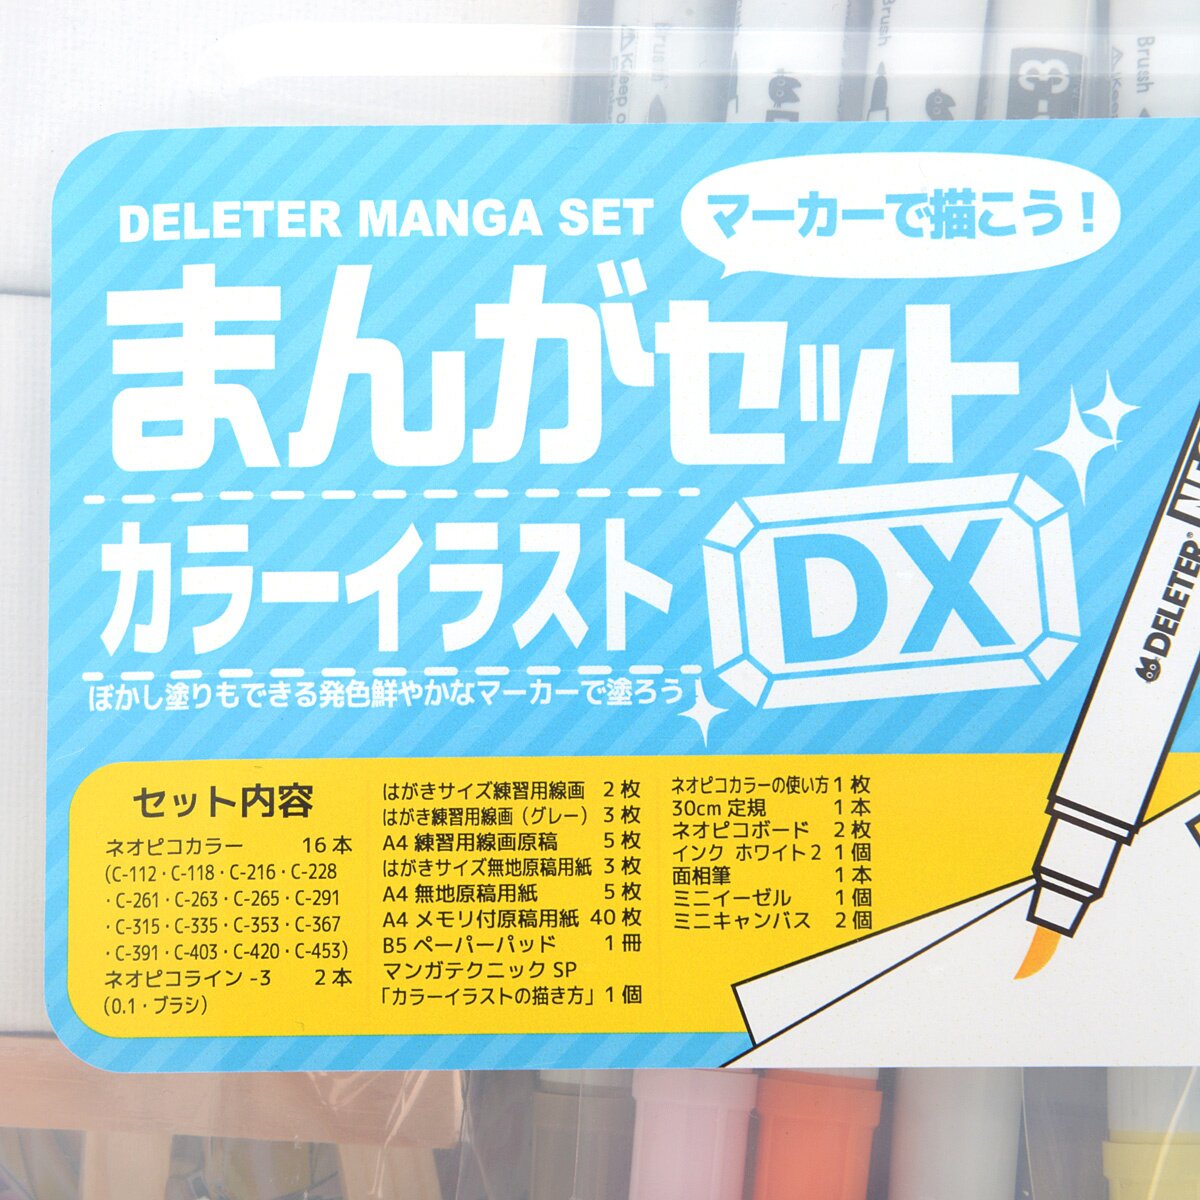 Deleter Manga Drawing Set DX